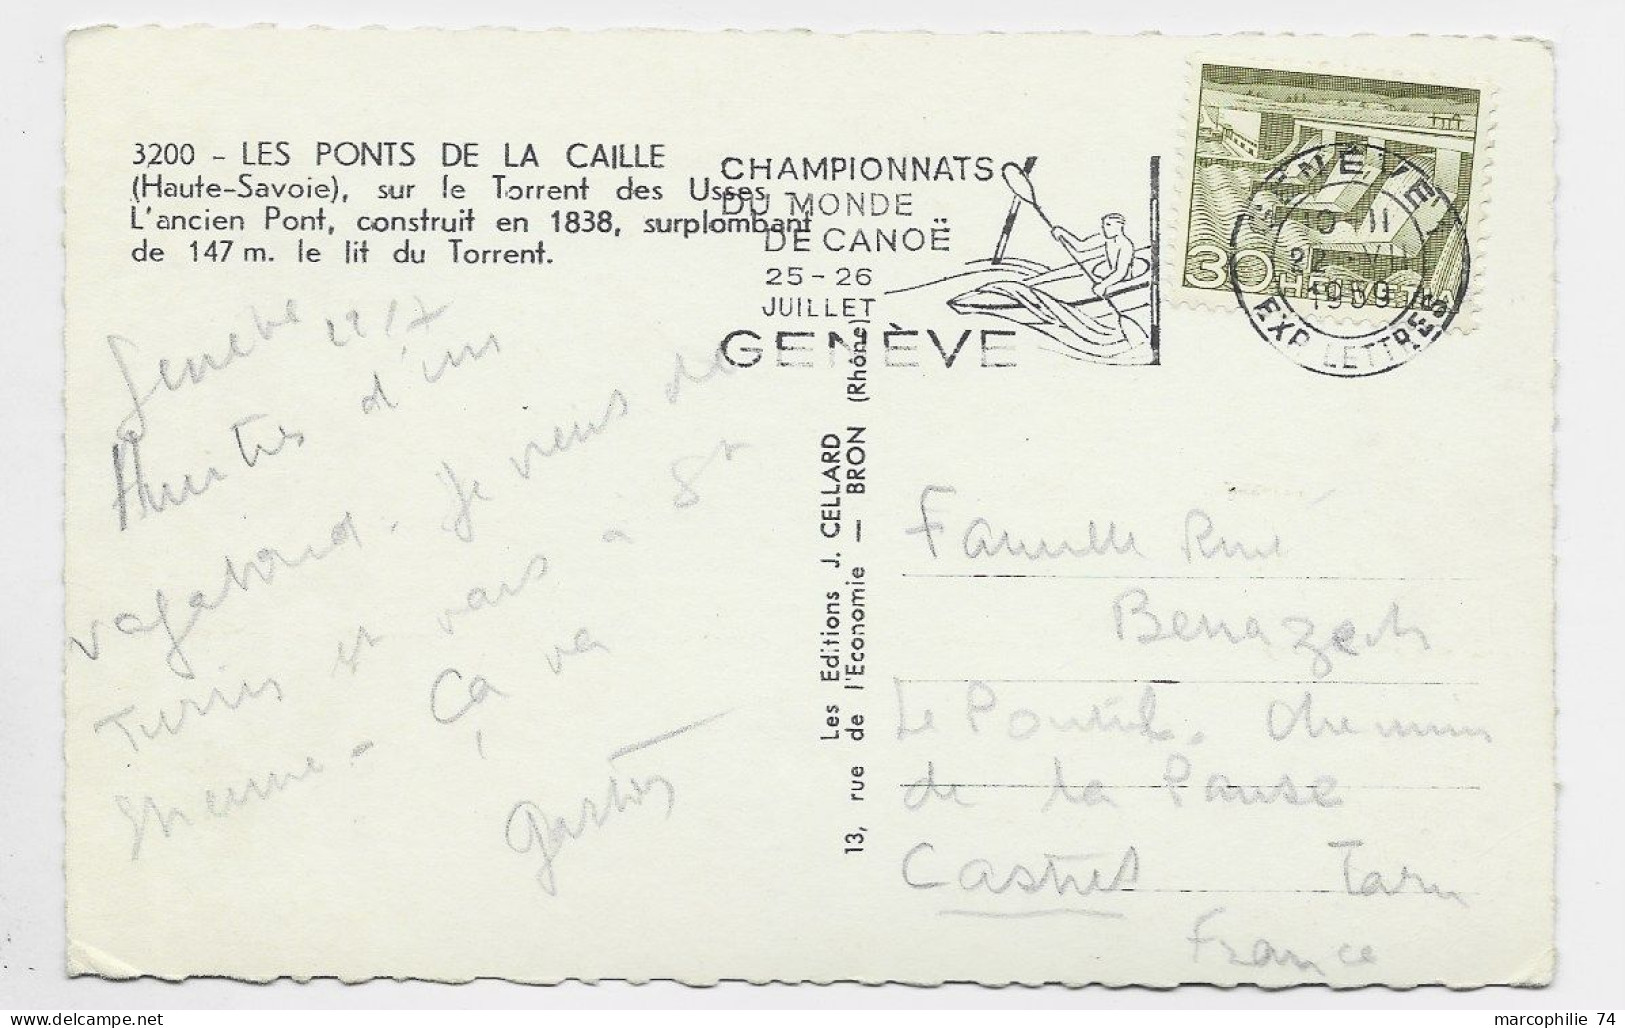 SUISSE HELVETIA 30C SOLO CARD FRANCE MECANIQUE GENEVE CHAMPIONNATS MONDE CANOE 1959 - Canoë